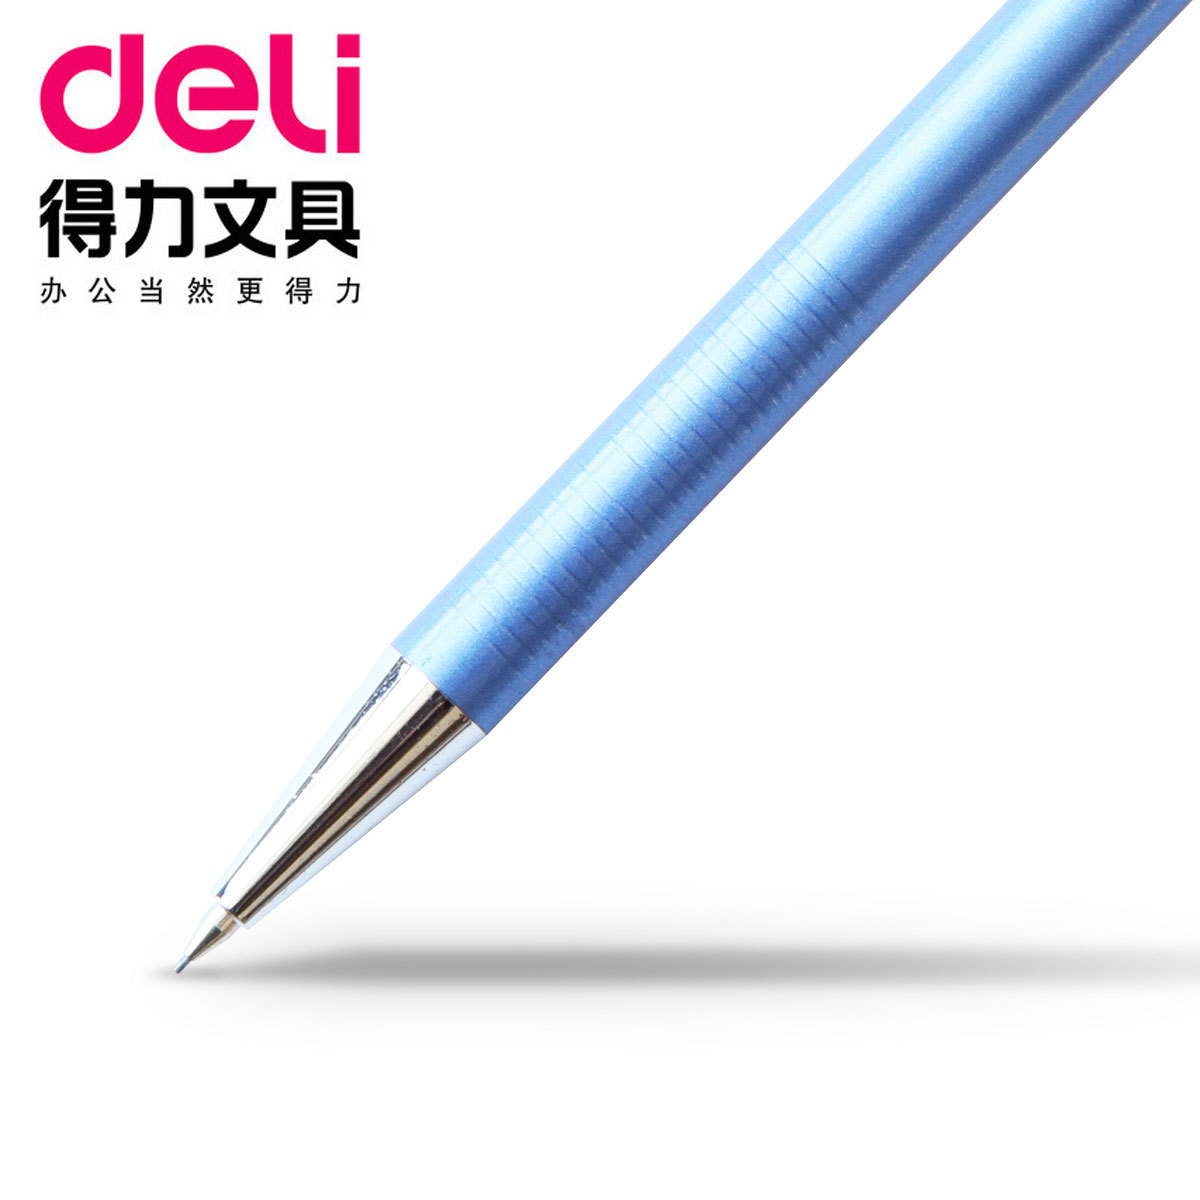 金属质感得力6492自动铅笔 按动铅笔 活动铅笔 0.5mm自动笔